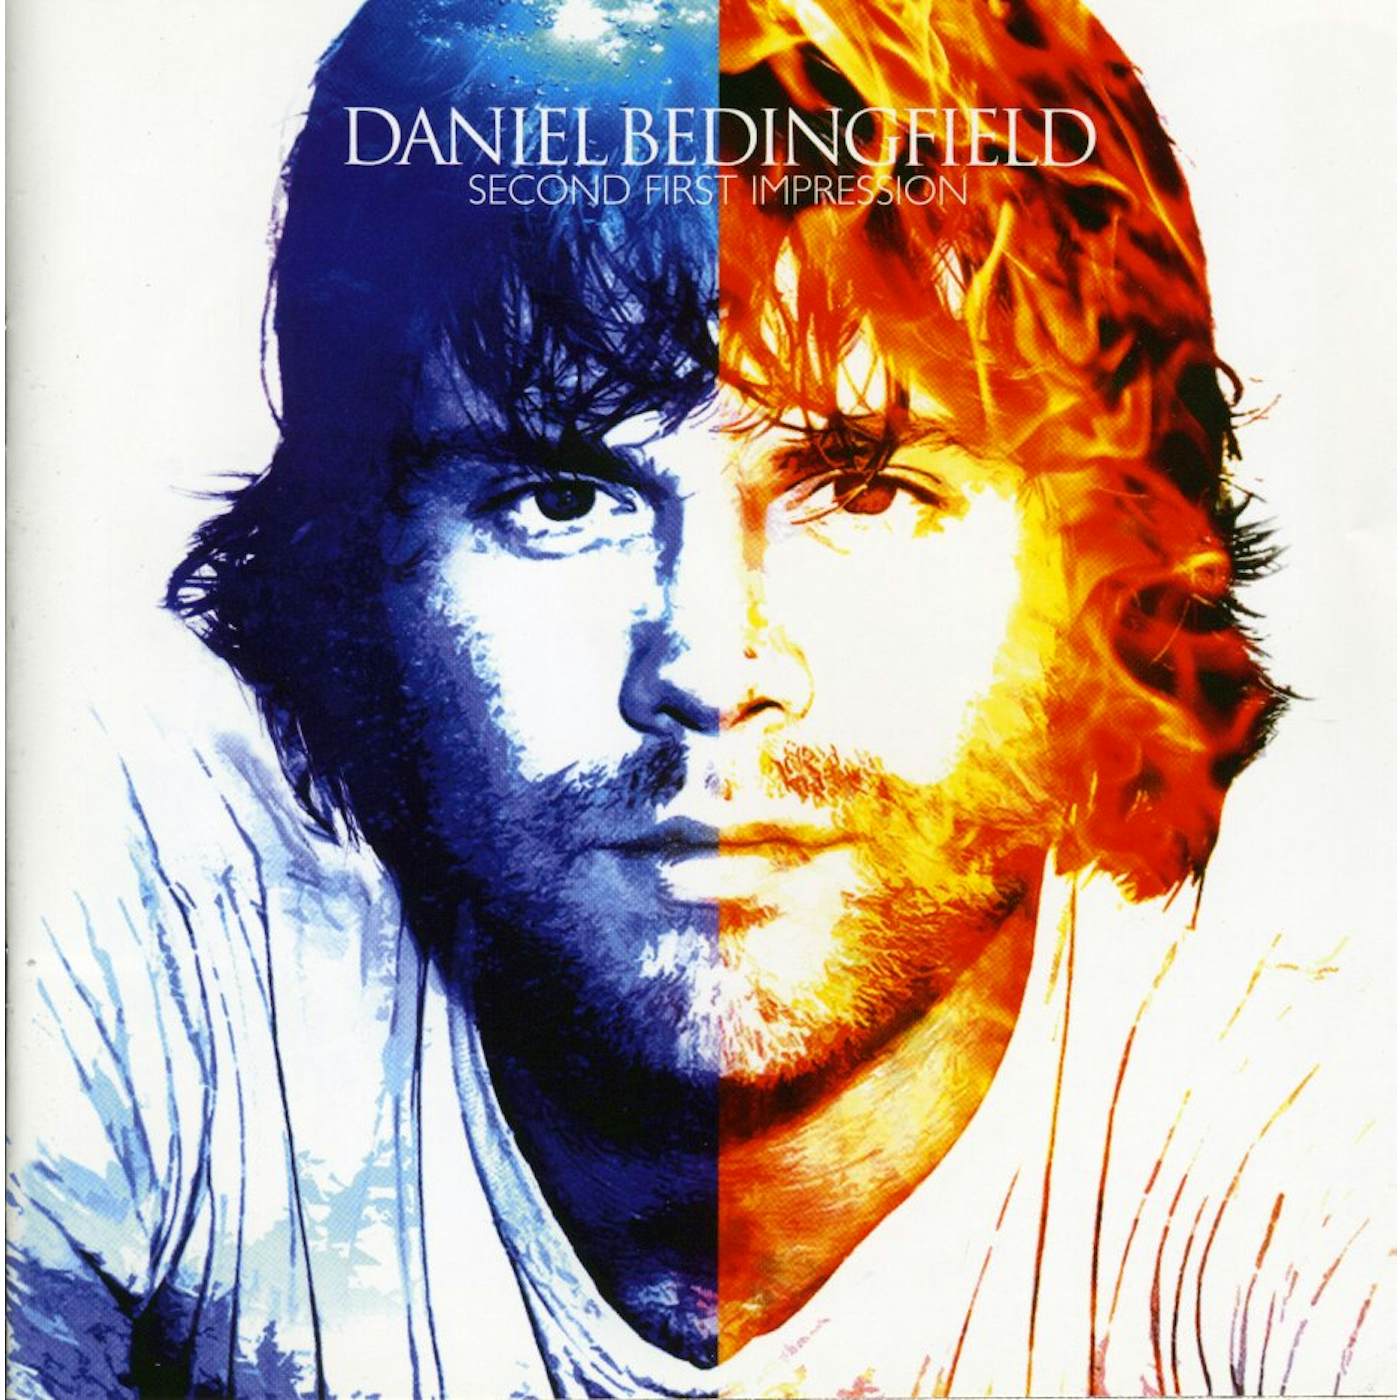 Daniel Bedingfield SECOND FIRST IMPRESSION CD